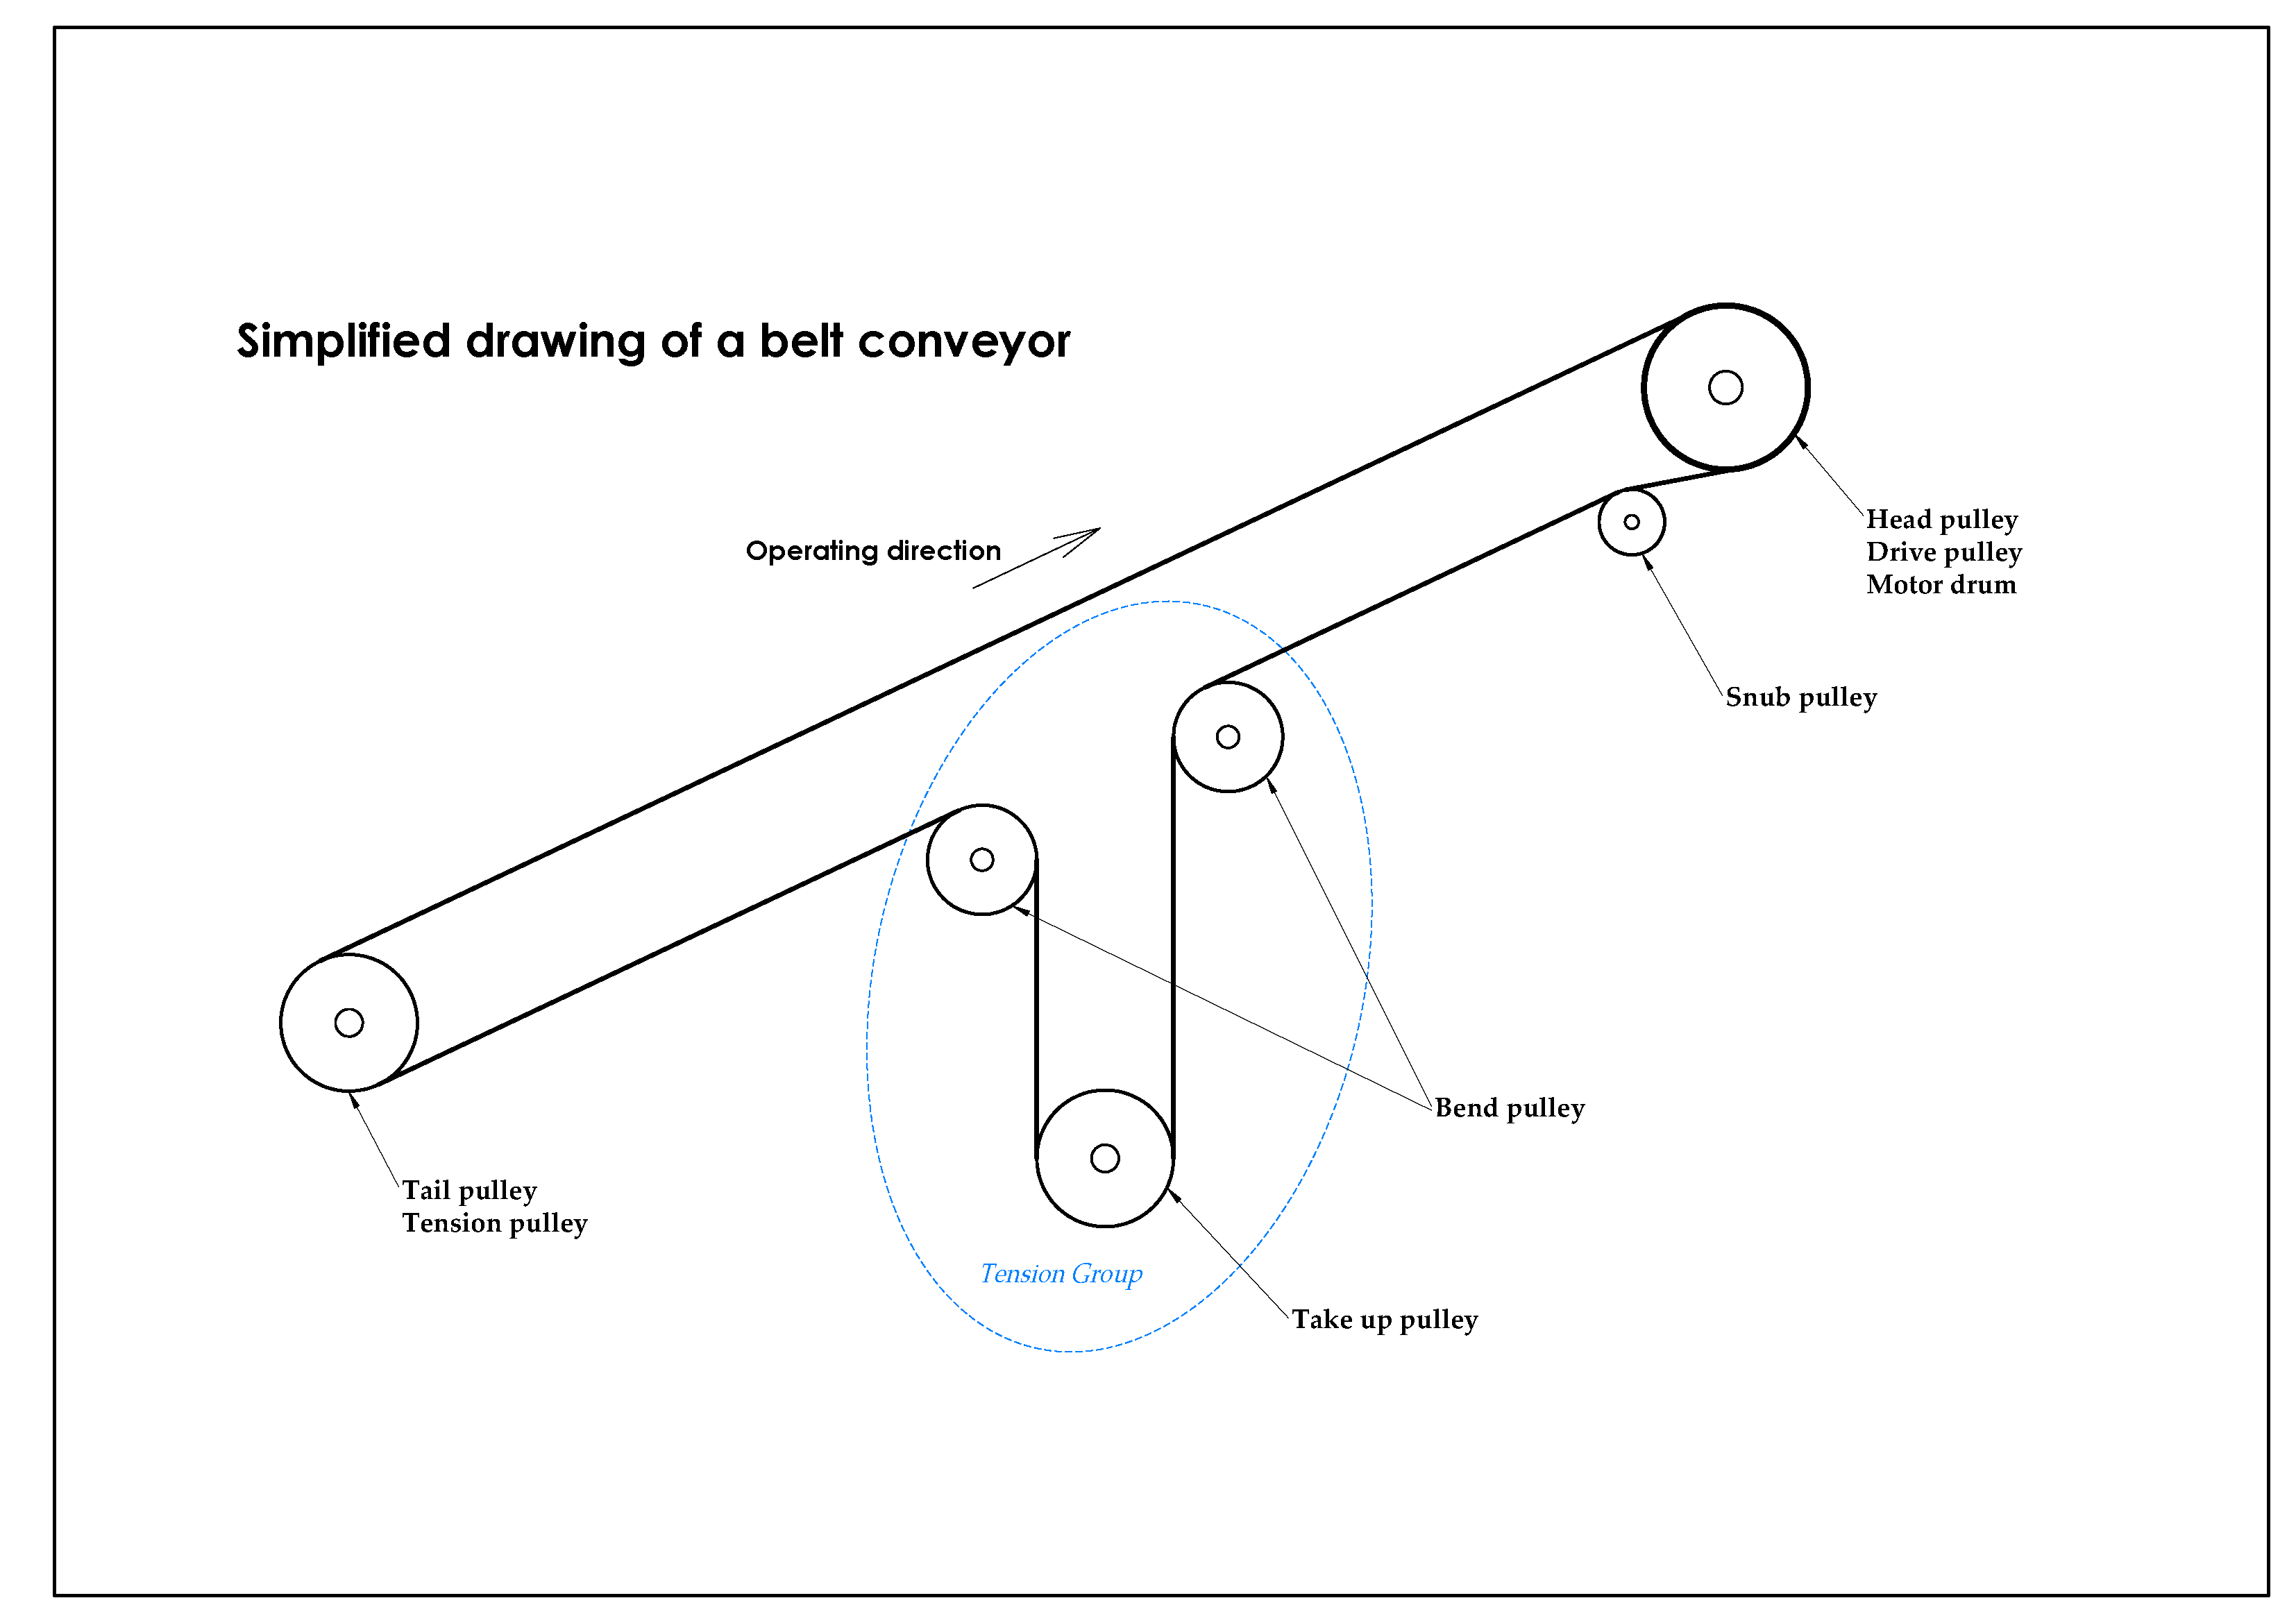 opruiming > head pulley belt conveyor